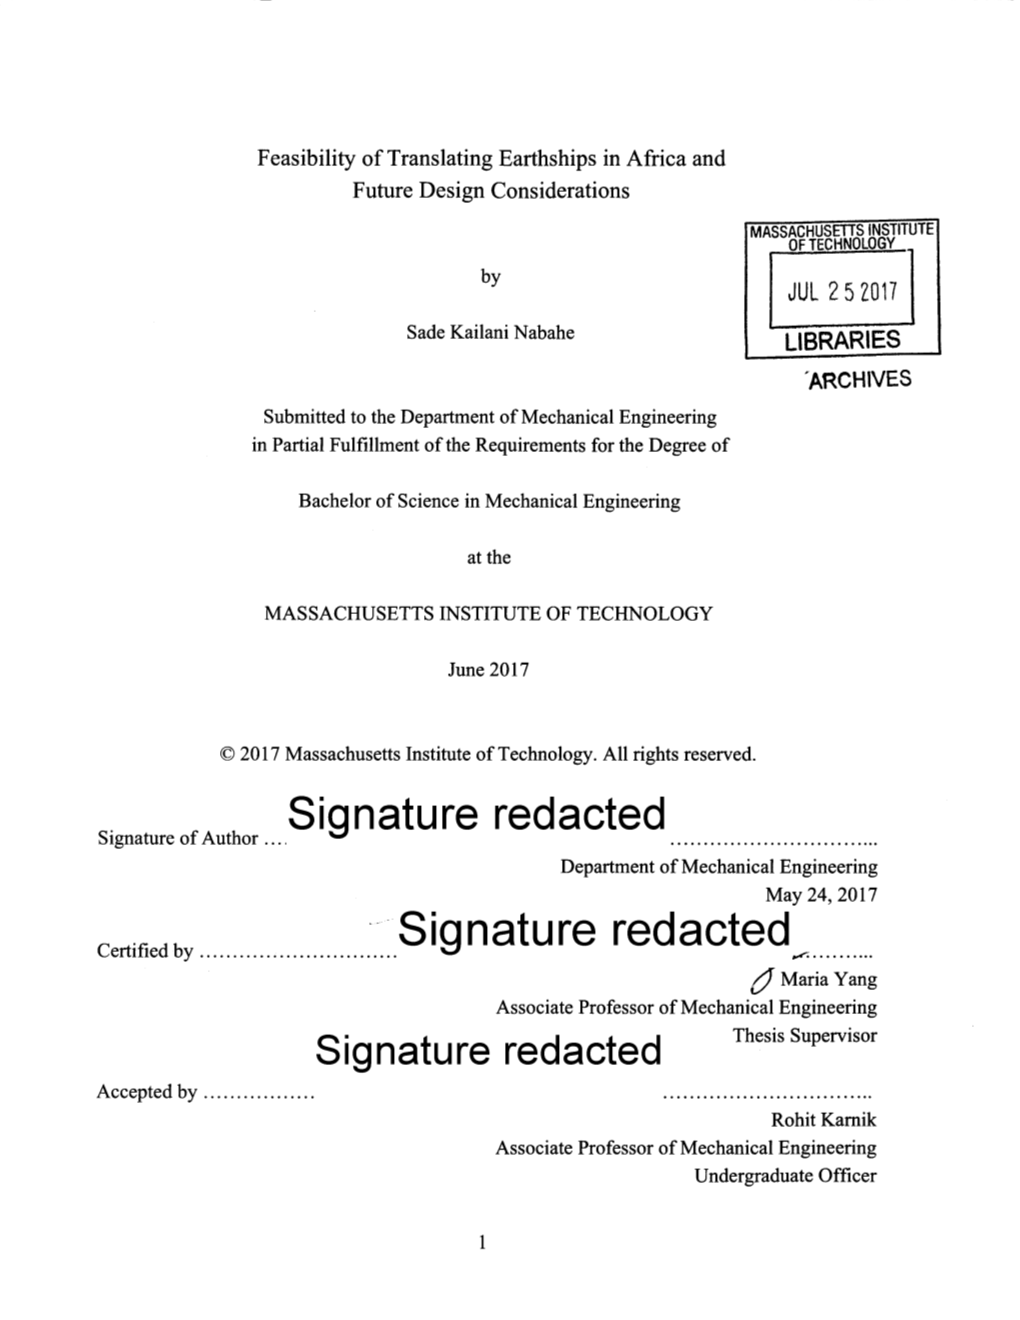 Signature Redacted